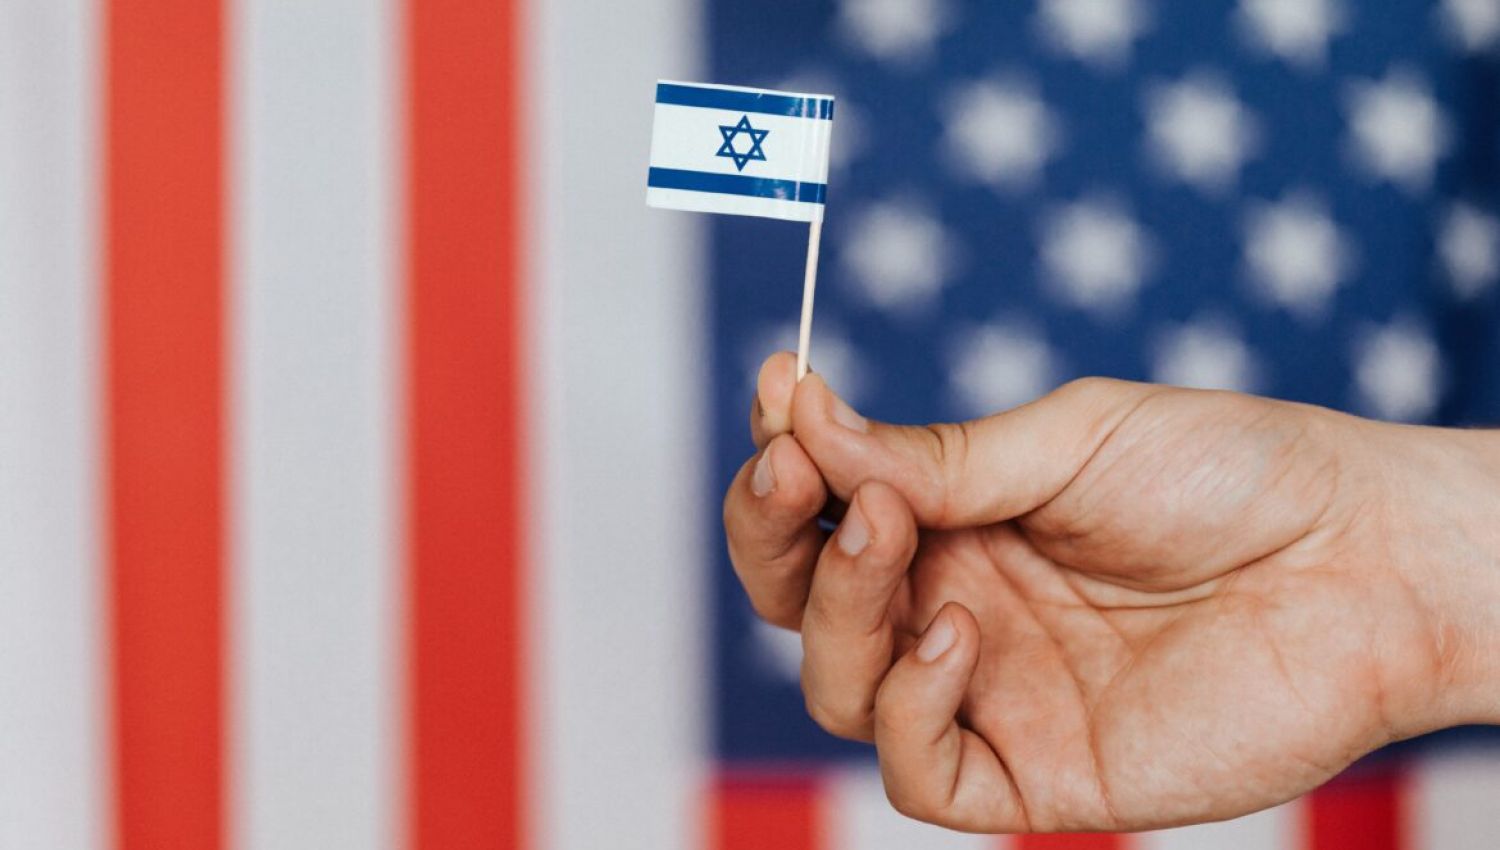 بعد "سيف القدس" قلق إسرائيلي حيال العلاقة مع أمريكا